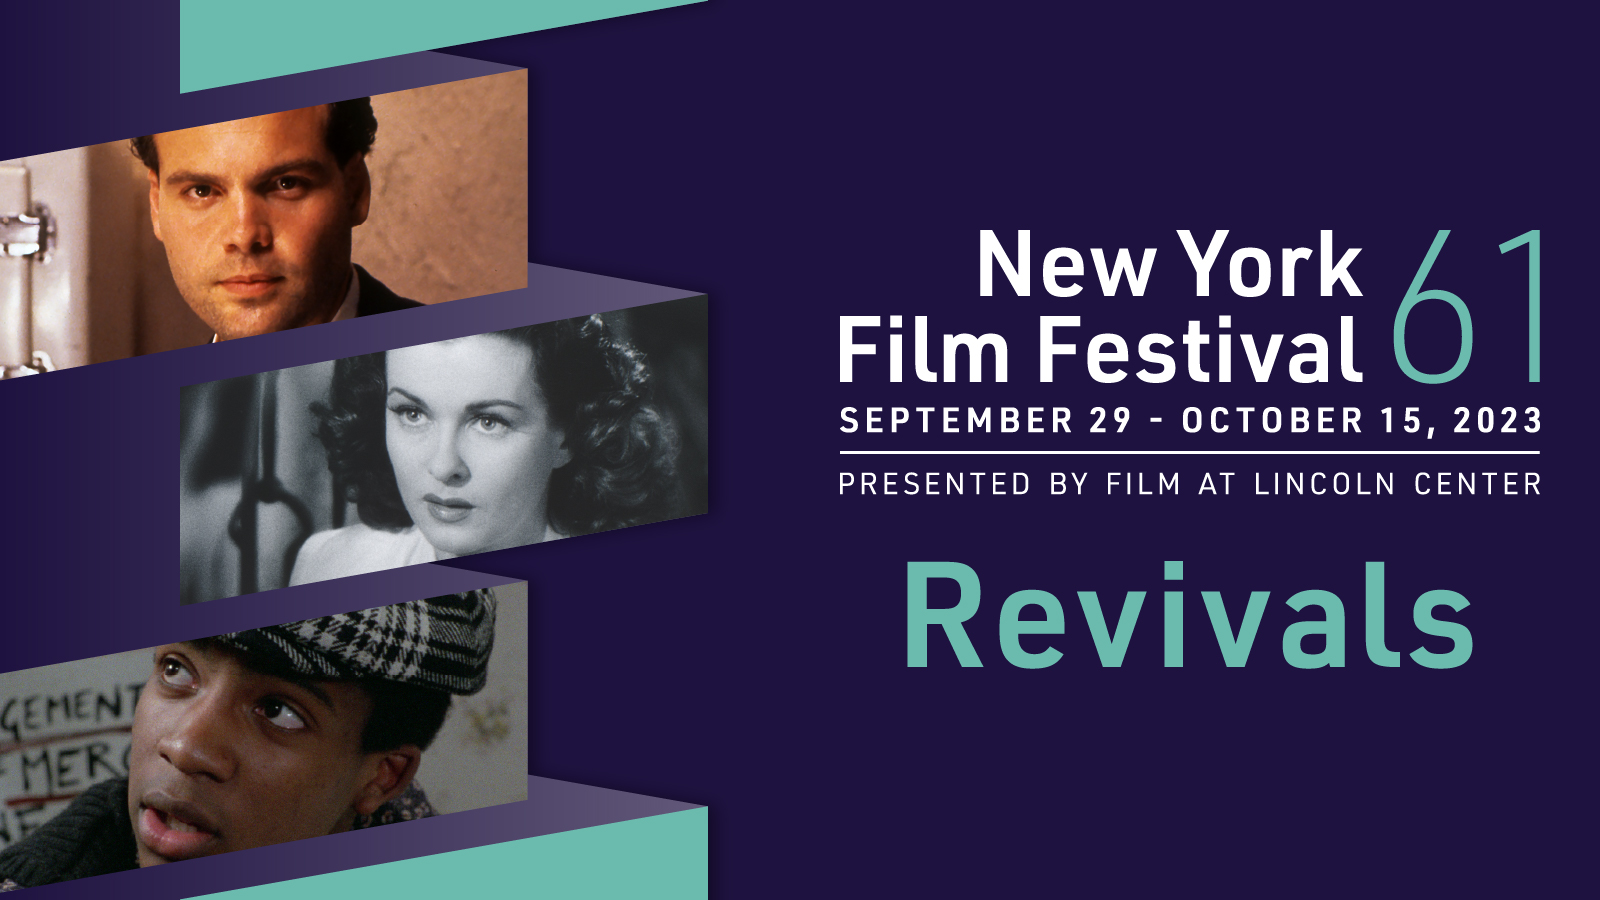 61st New York Film Festival Revivals Announced